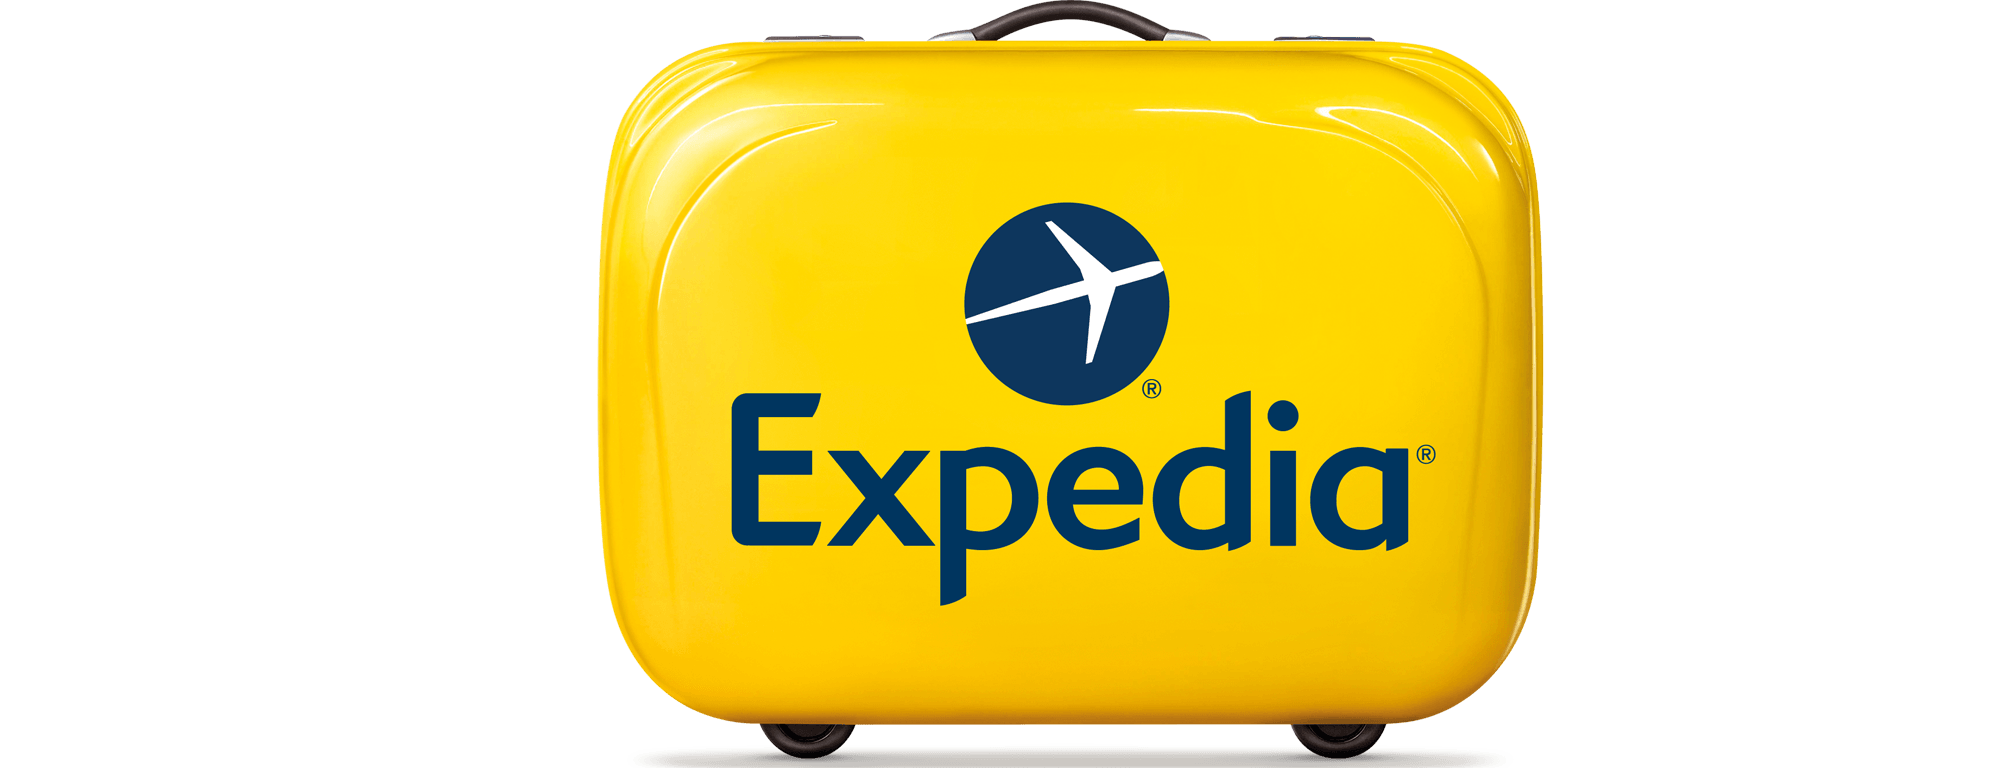 Expidia Logo - Plan now, reward yourself later